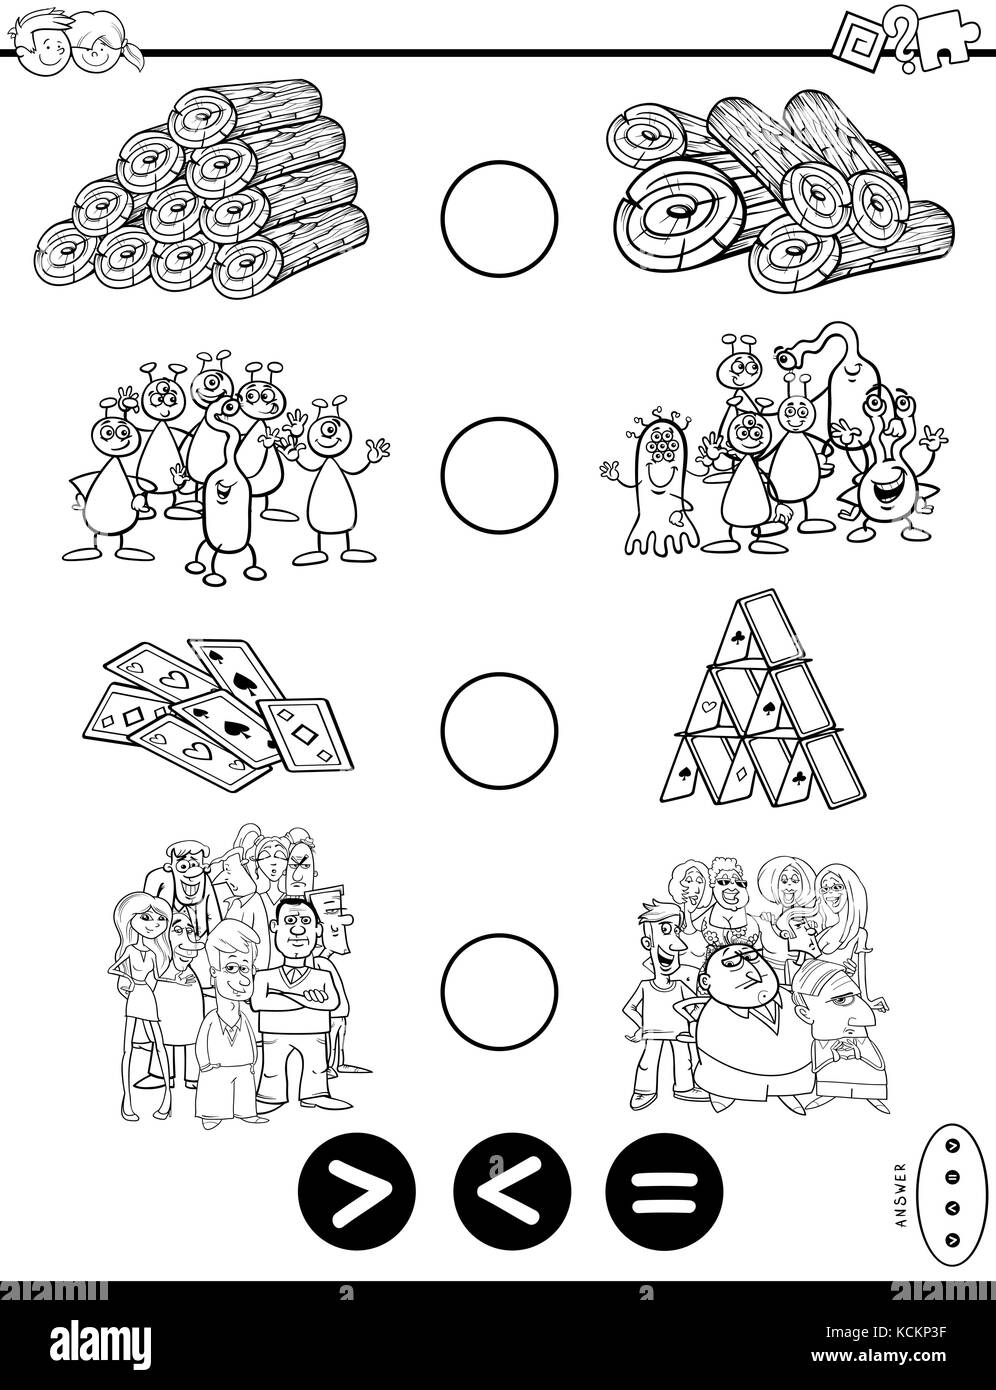 Schwarze und weiße Cartoon Illustration der pädagogischen mathematische Aktivität Spiel von mehr als, weniger als oder gleich für Kinder mit Objekten und Verwen Stock Vektor